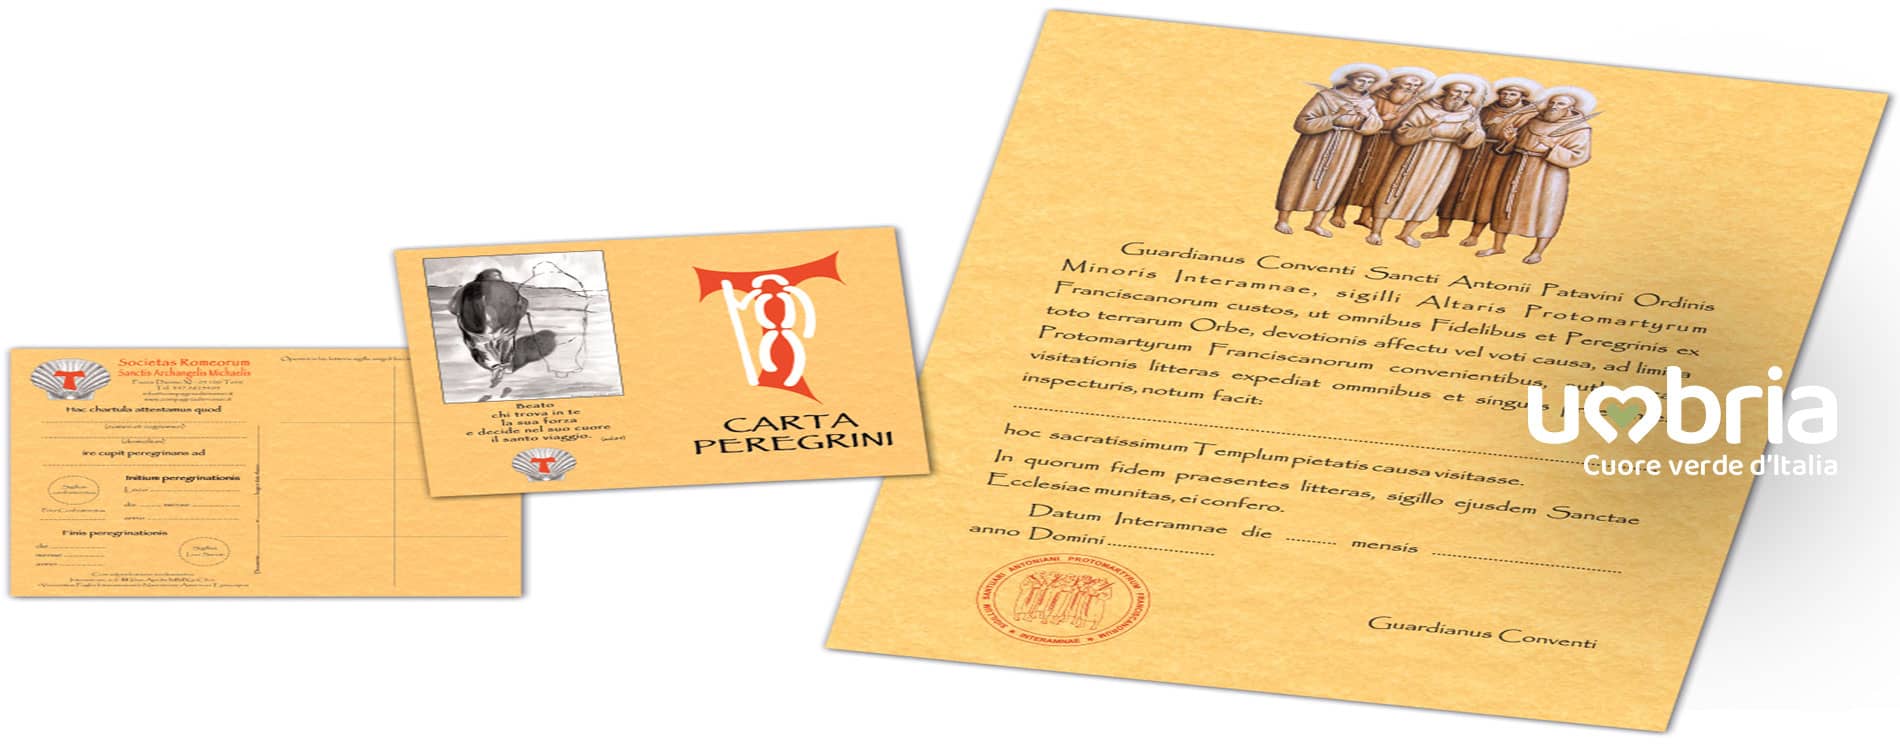 Richiedi la Credenziale del Pellegrino (Carta Peregrini) del Cammino dei Protomartiri Francescani, Terni, Umbria, Italia